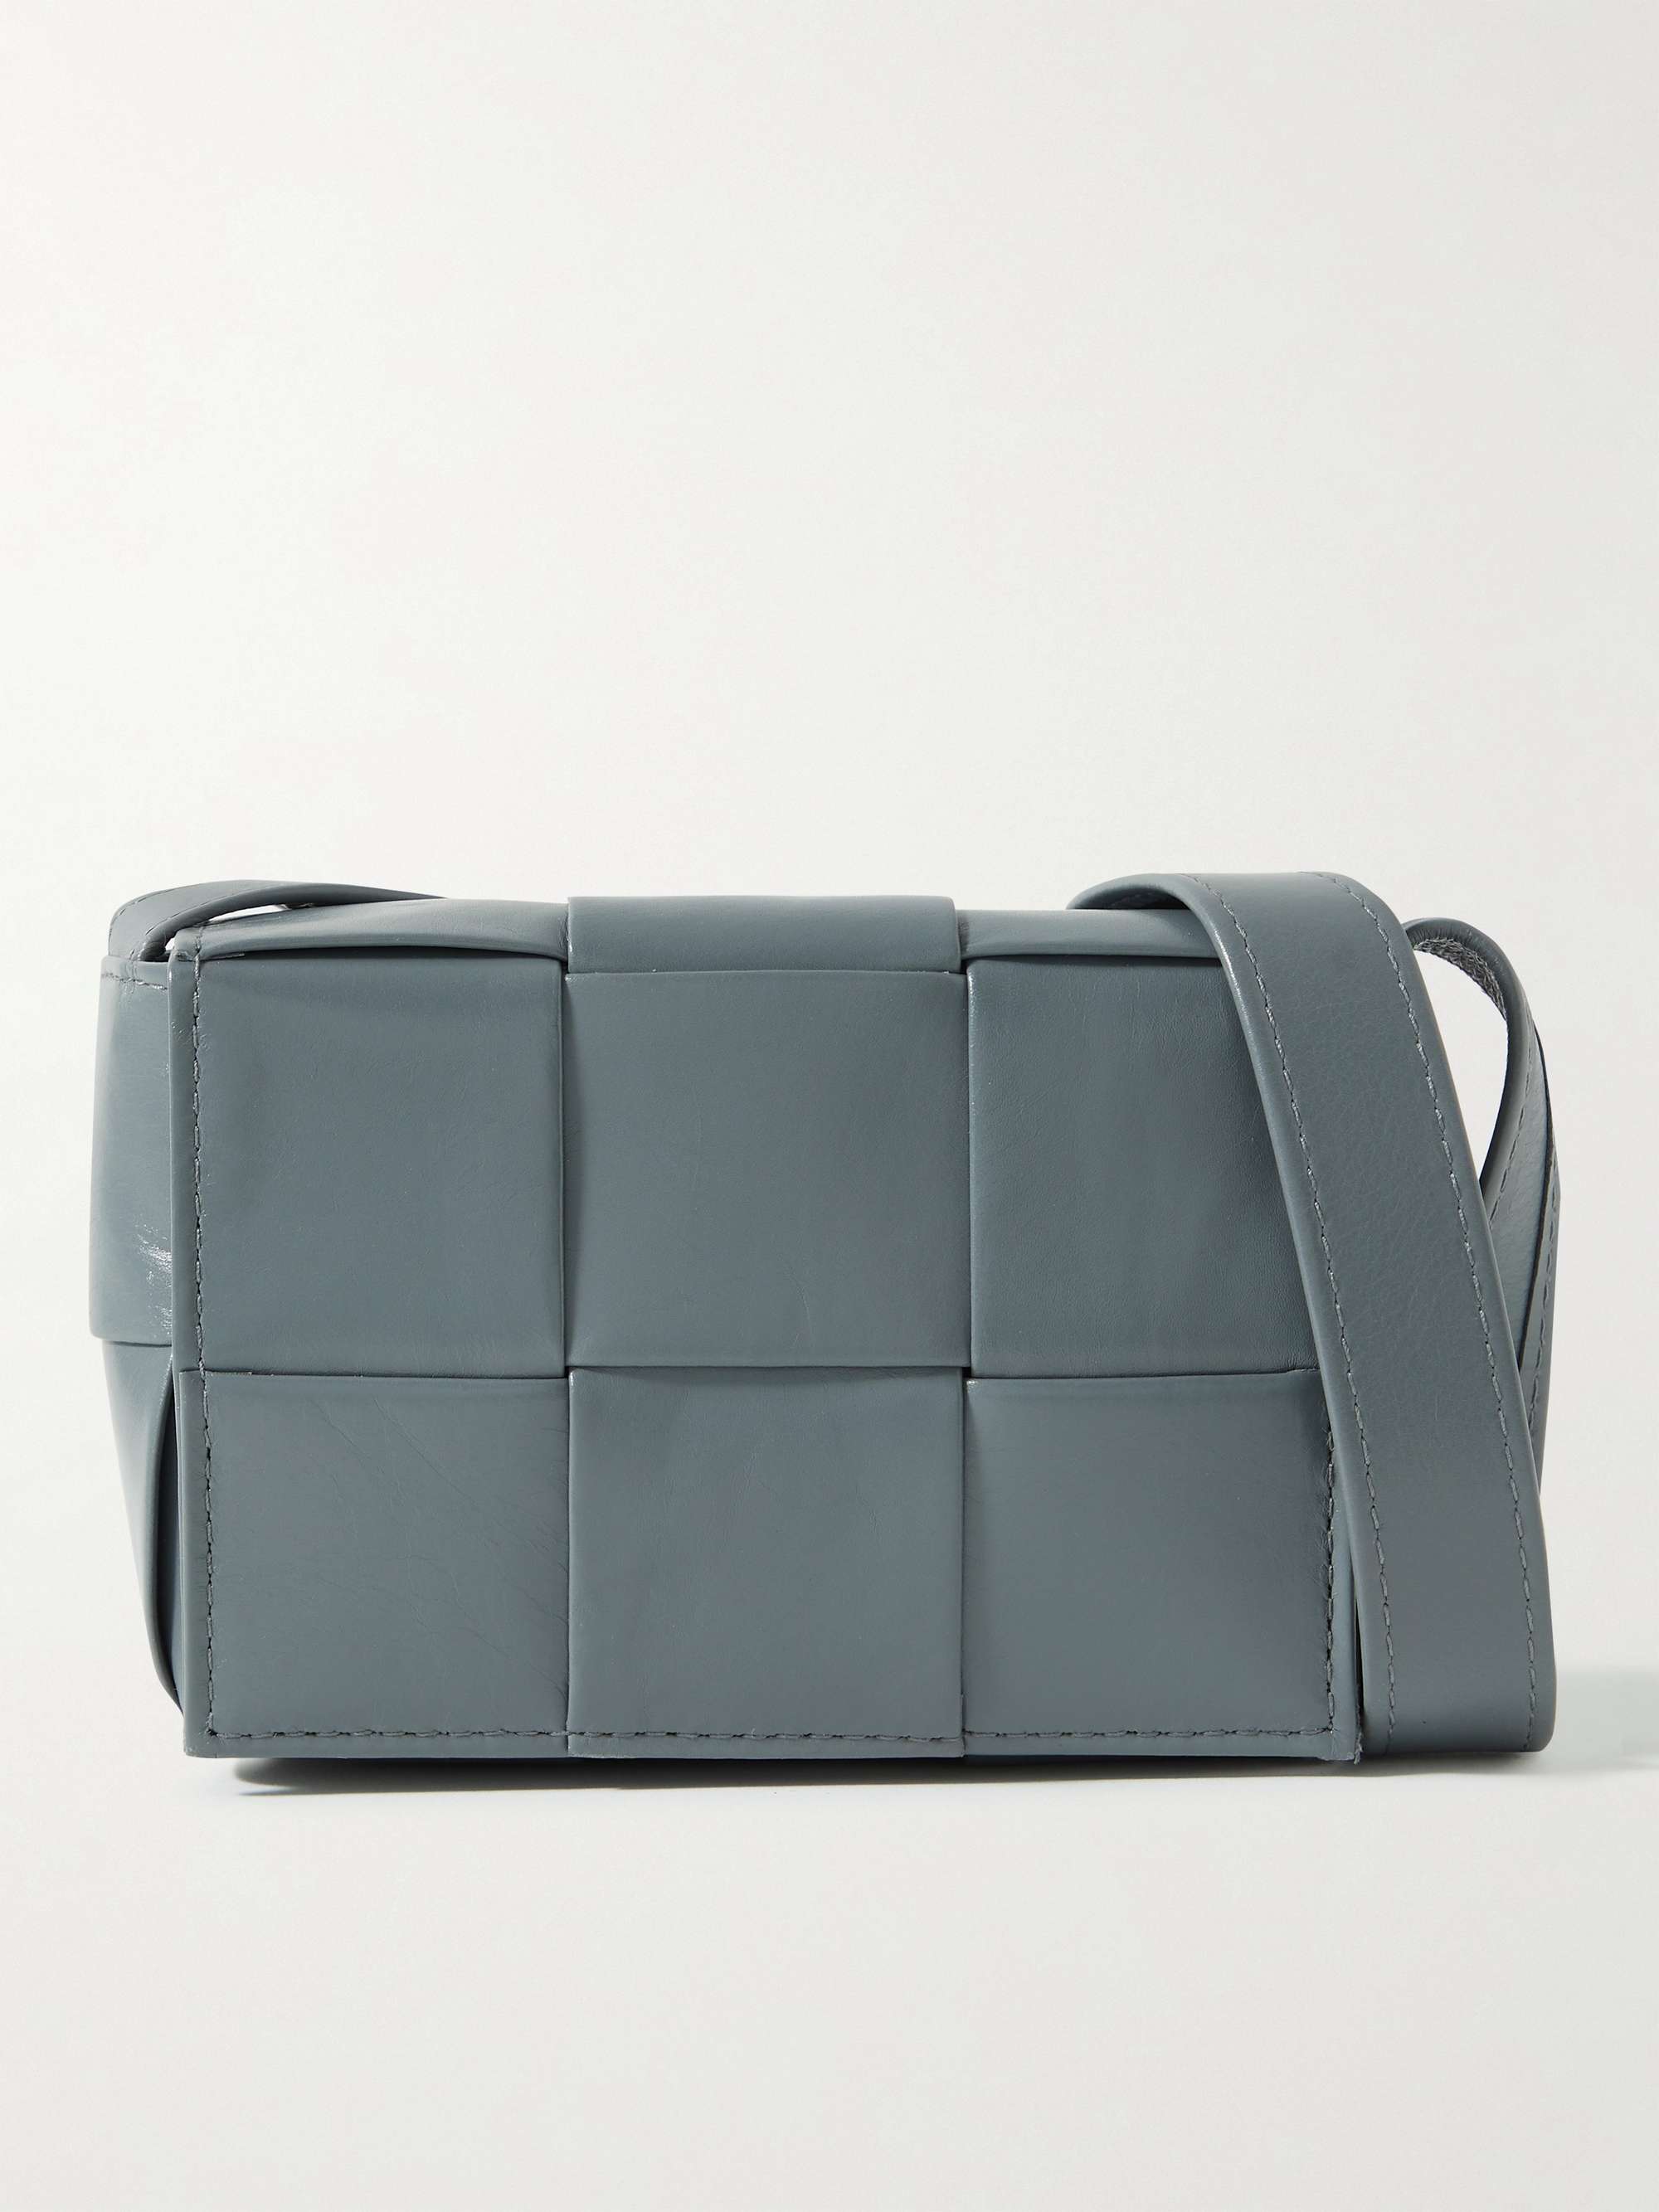 Bottega Veneta's Cassette Bag: What makes an it bag?